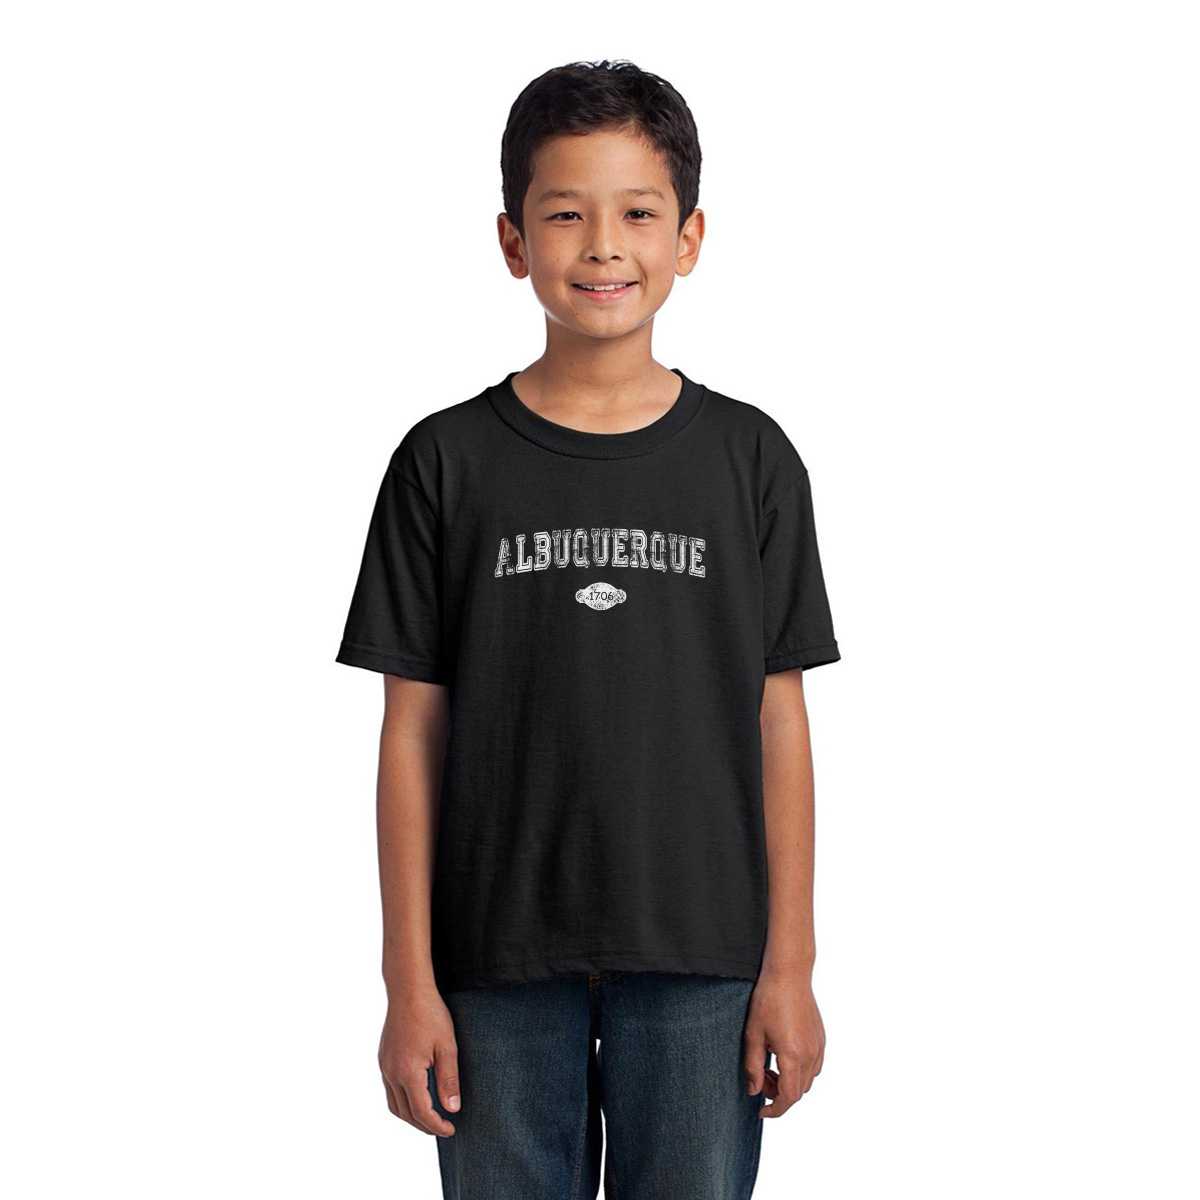 Albuquerque 1706 Represent Toddler T-shirt | Black